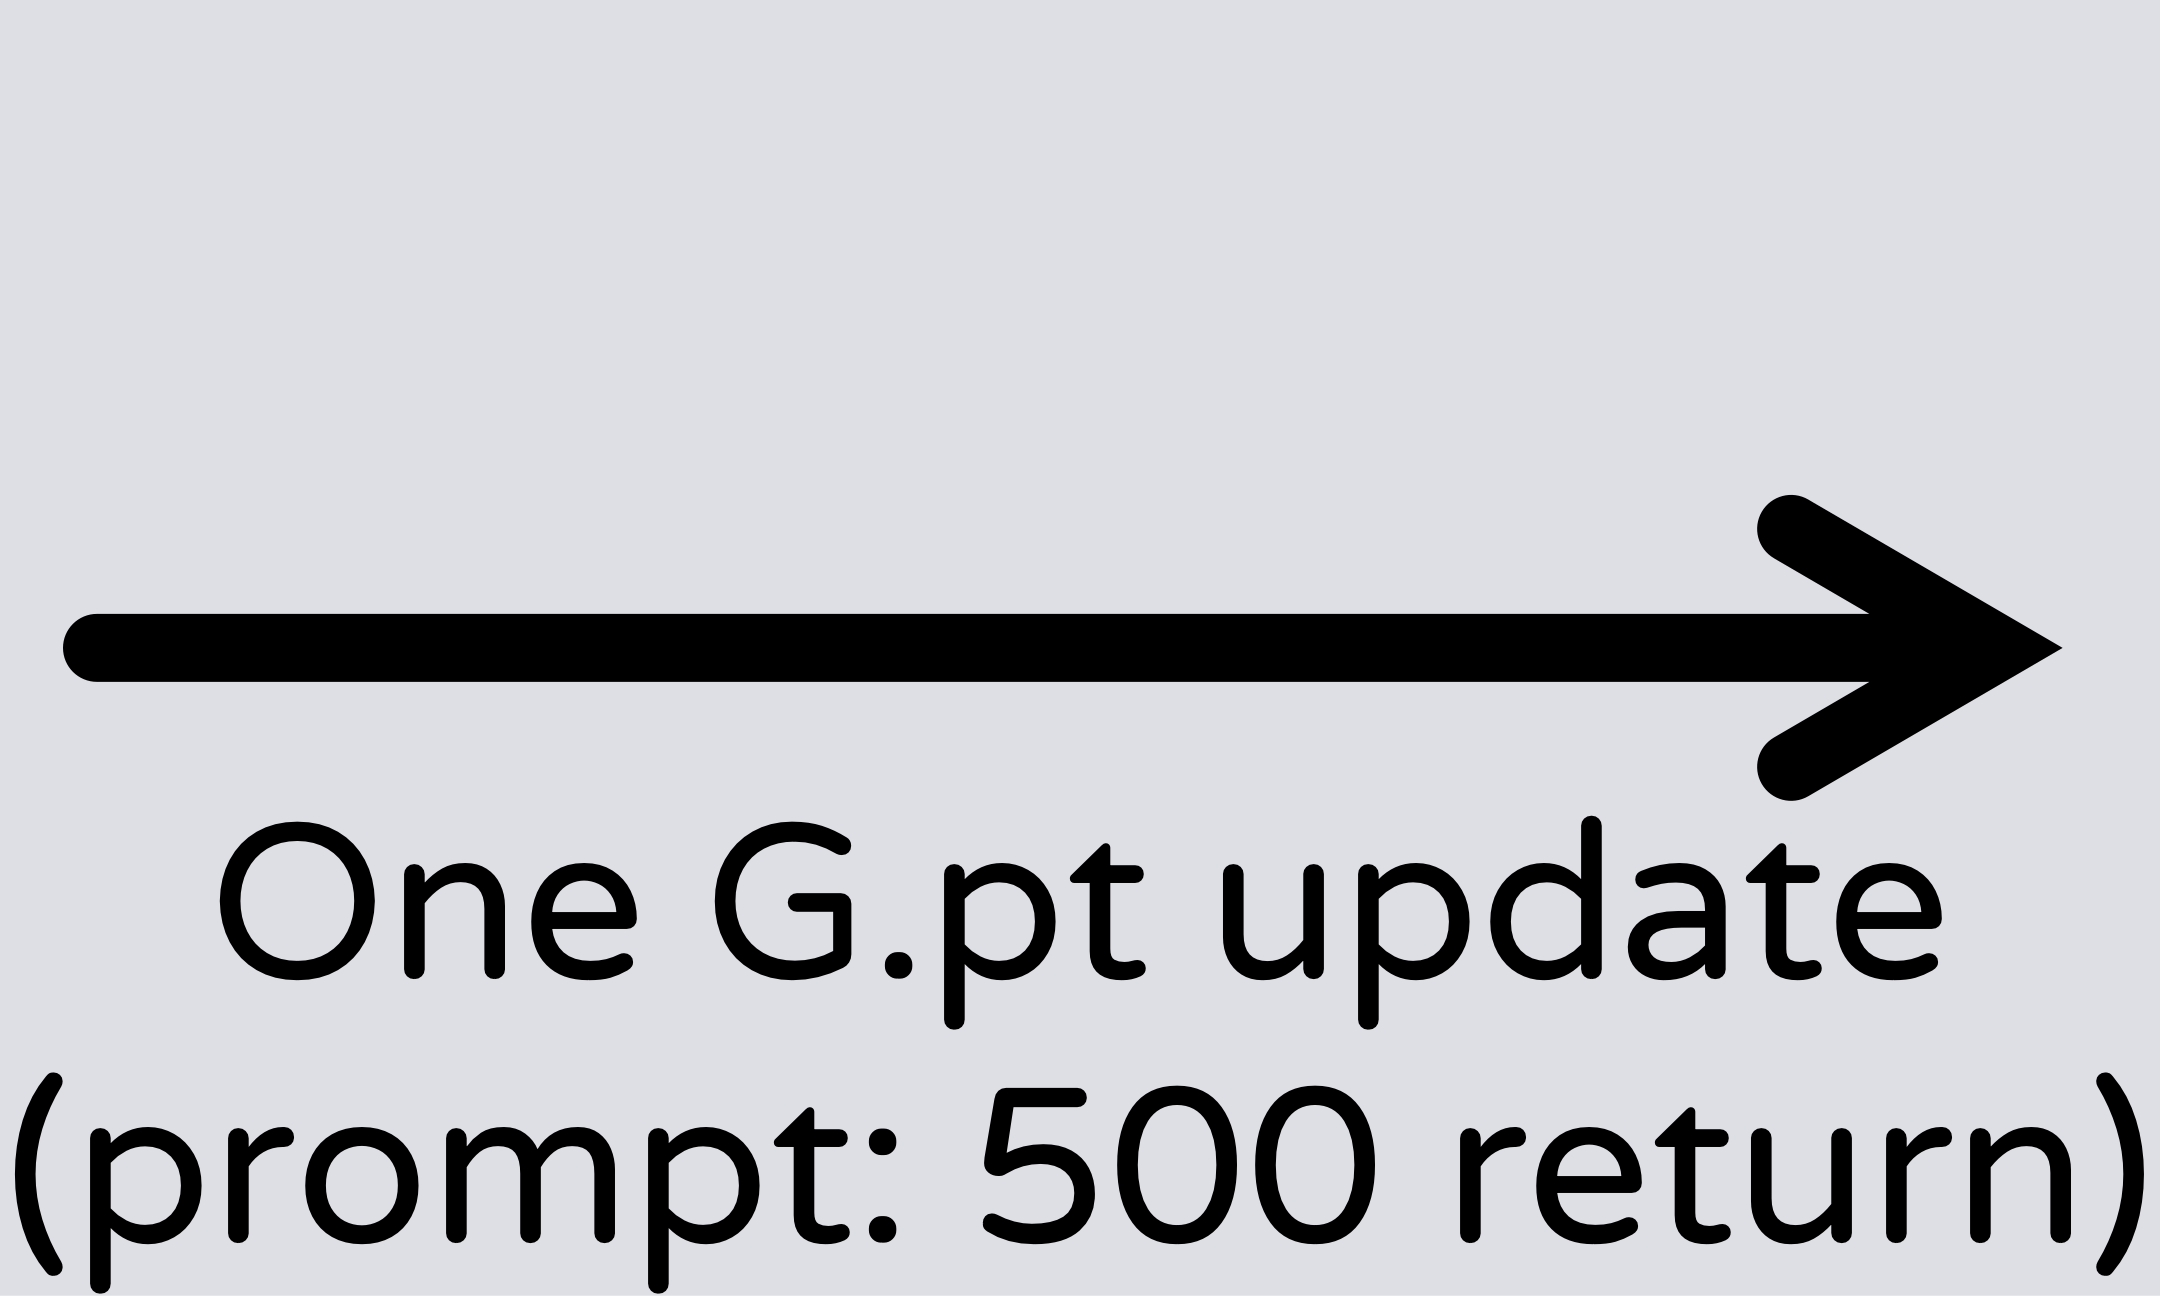 One G.pt update.